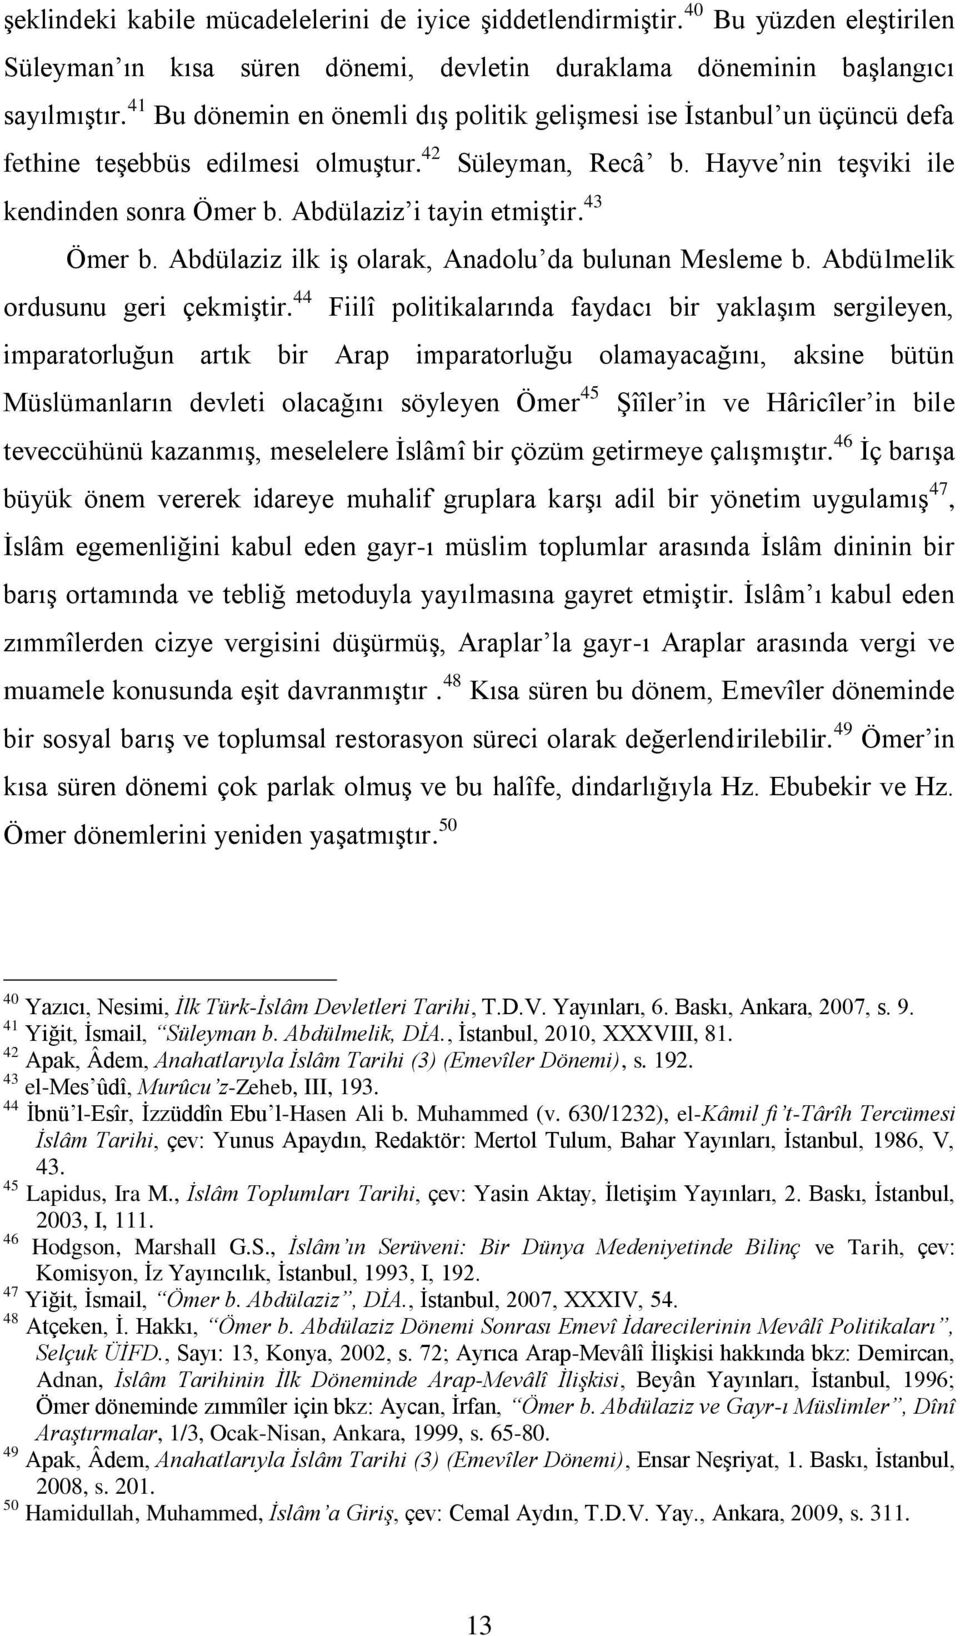 Abdülaziz i tayin etmiştir. 43 Ömer b. Abdülaziz ilk iş olarak, Anadolu da bulunan Mesleme b. Abdülmelik ordusunu geri çekmiştir.